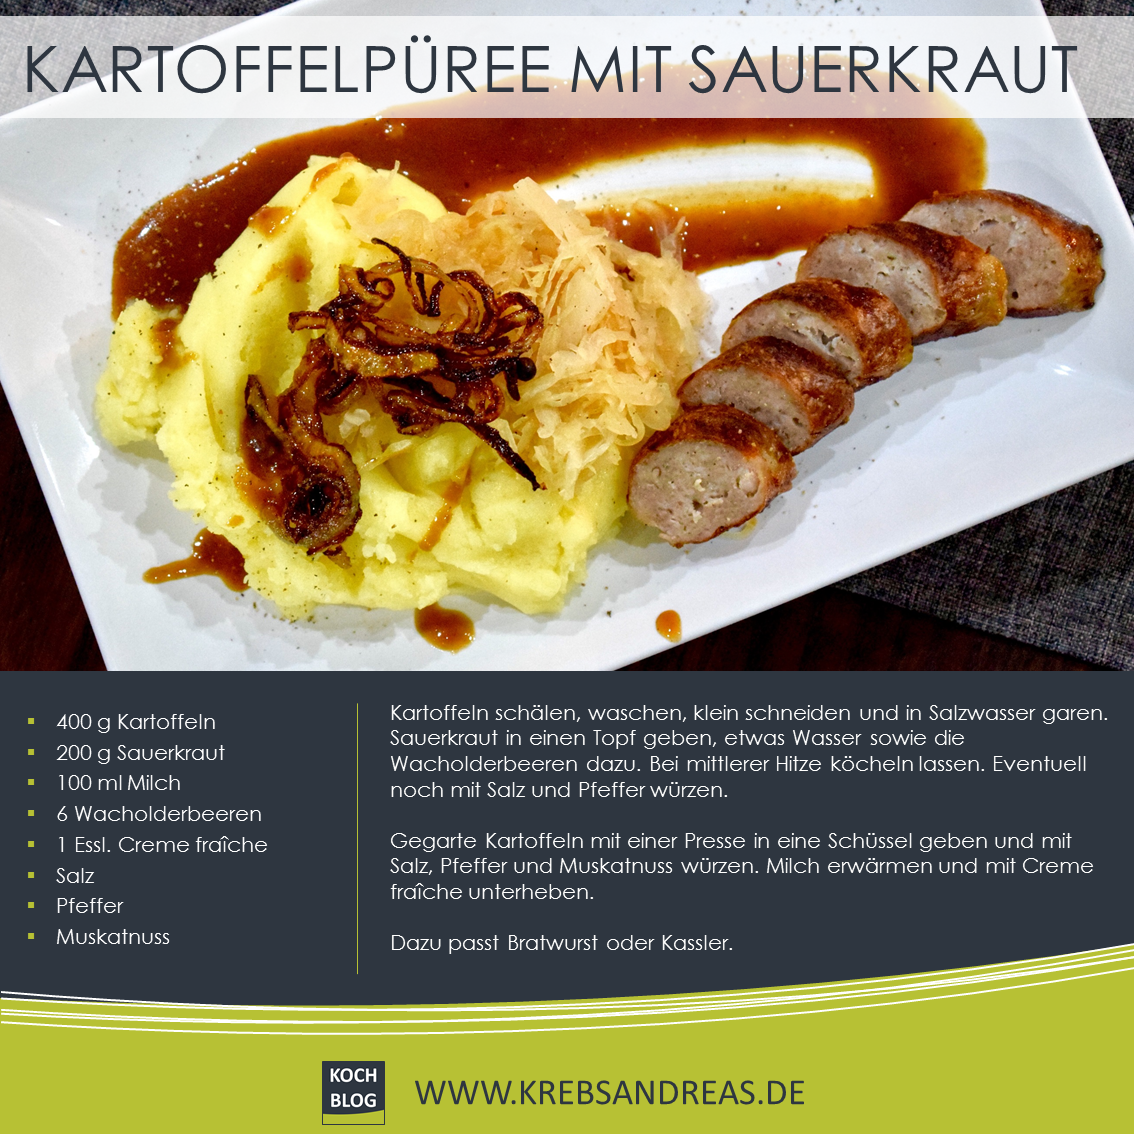 KOCH BLOG: Kartoffelpüree mit Sauerkraut